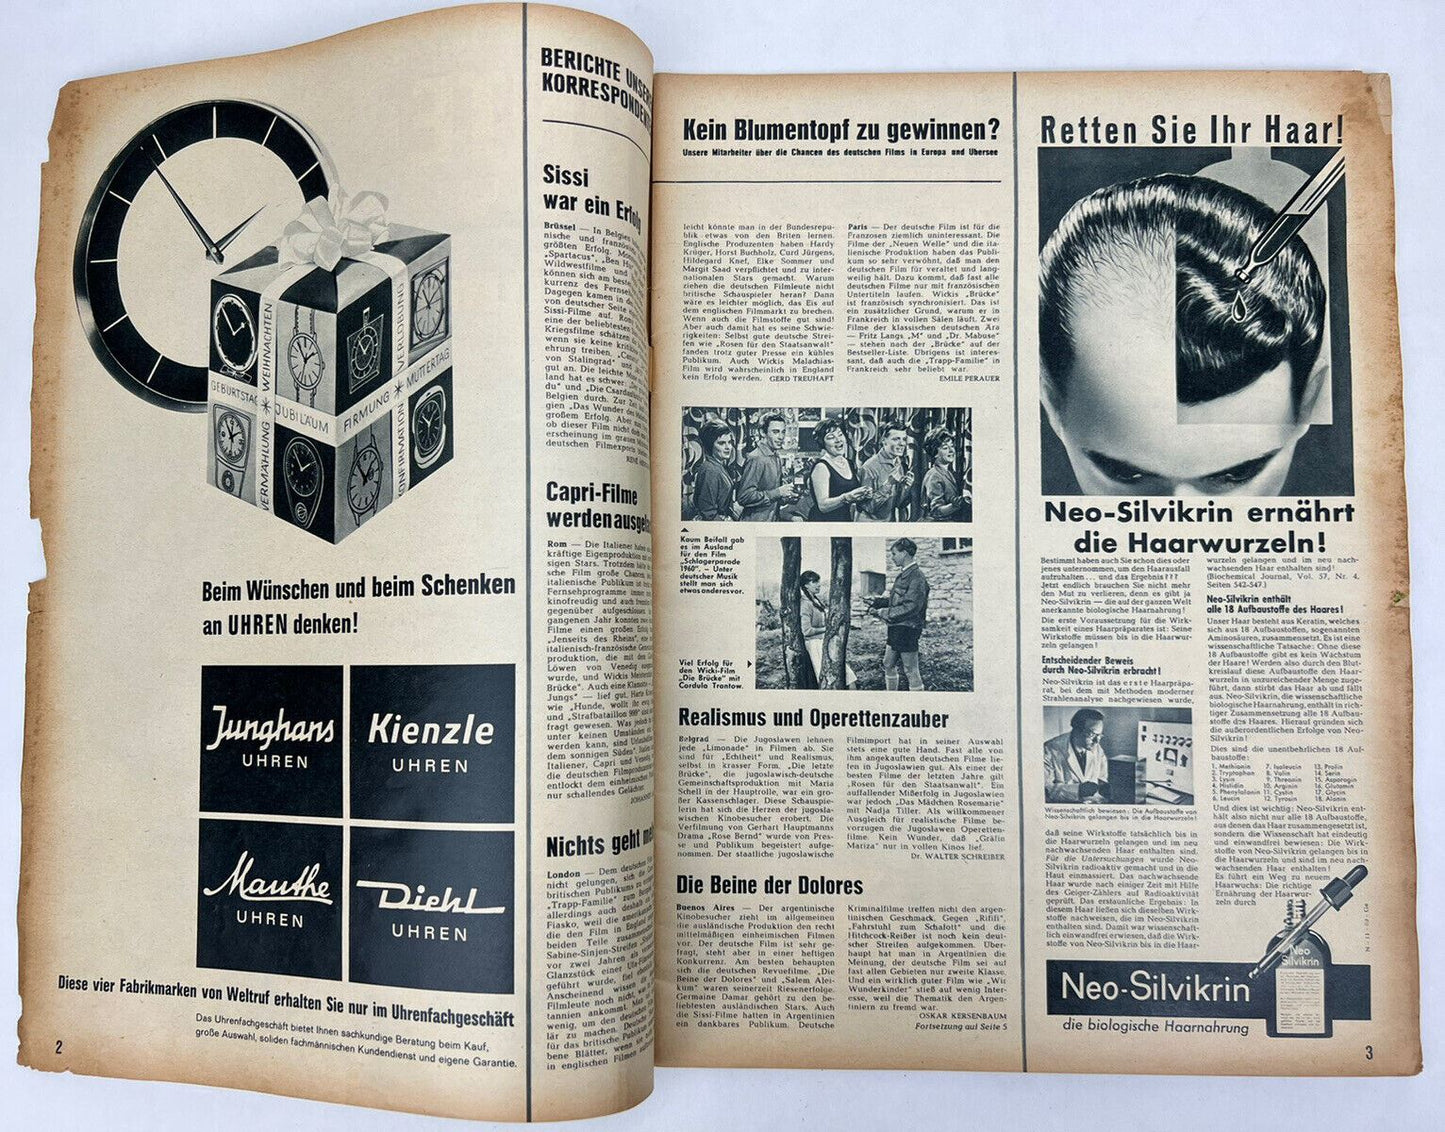 BUNTE / MUNCHNER ILLUSTRIERTE 1961 Romy Schneider AMAZON HEALERS German Magazine